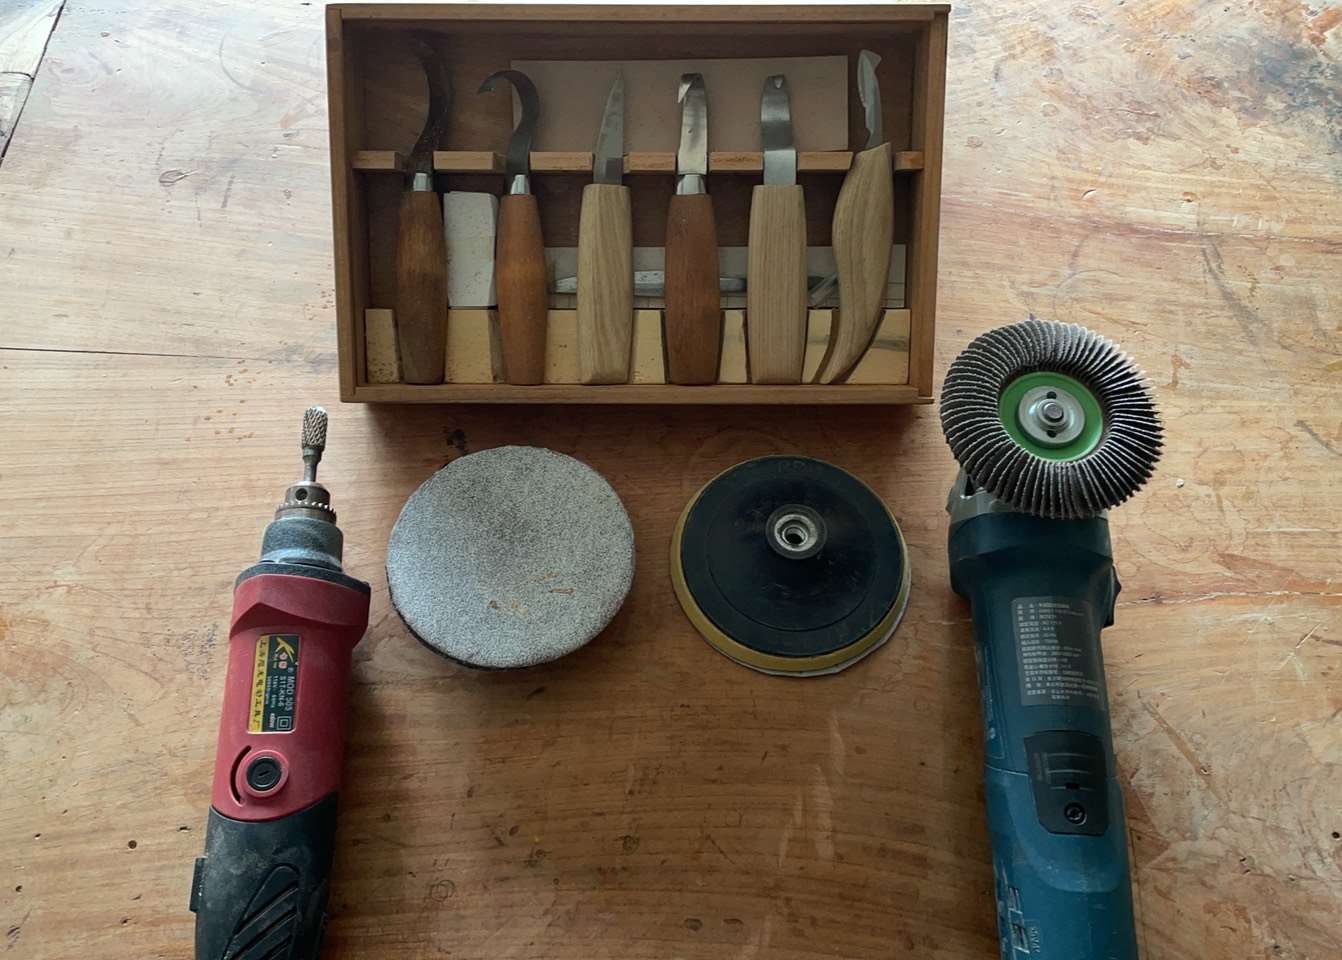 體驗的工具，左1刻磨機、中上虎刻雕刻刀、中下砂盤(正反面)、右1手提砂輪機